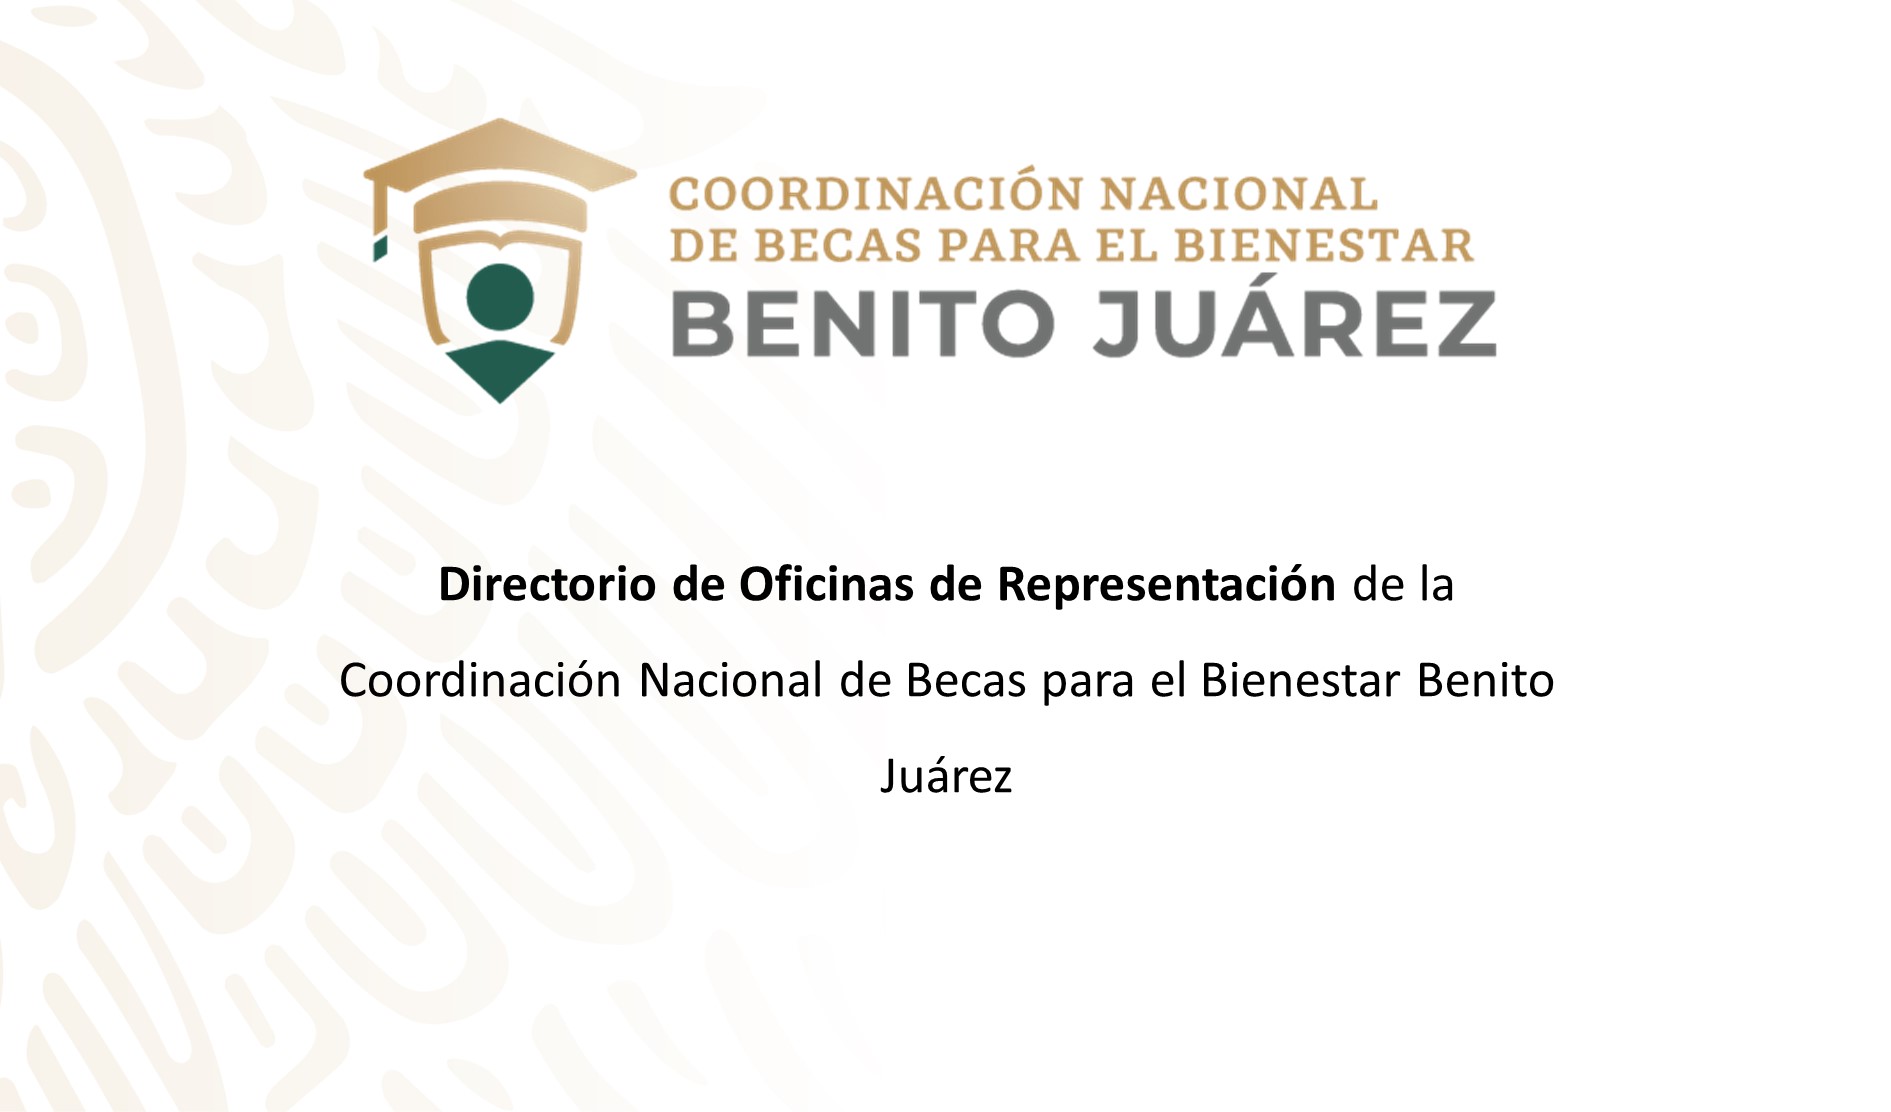 Directorio de Oficinas de Representación de la Coordinación Nacional de Becas para el Bienestar Benito Juárez